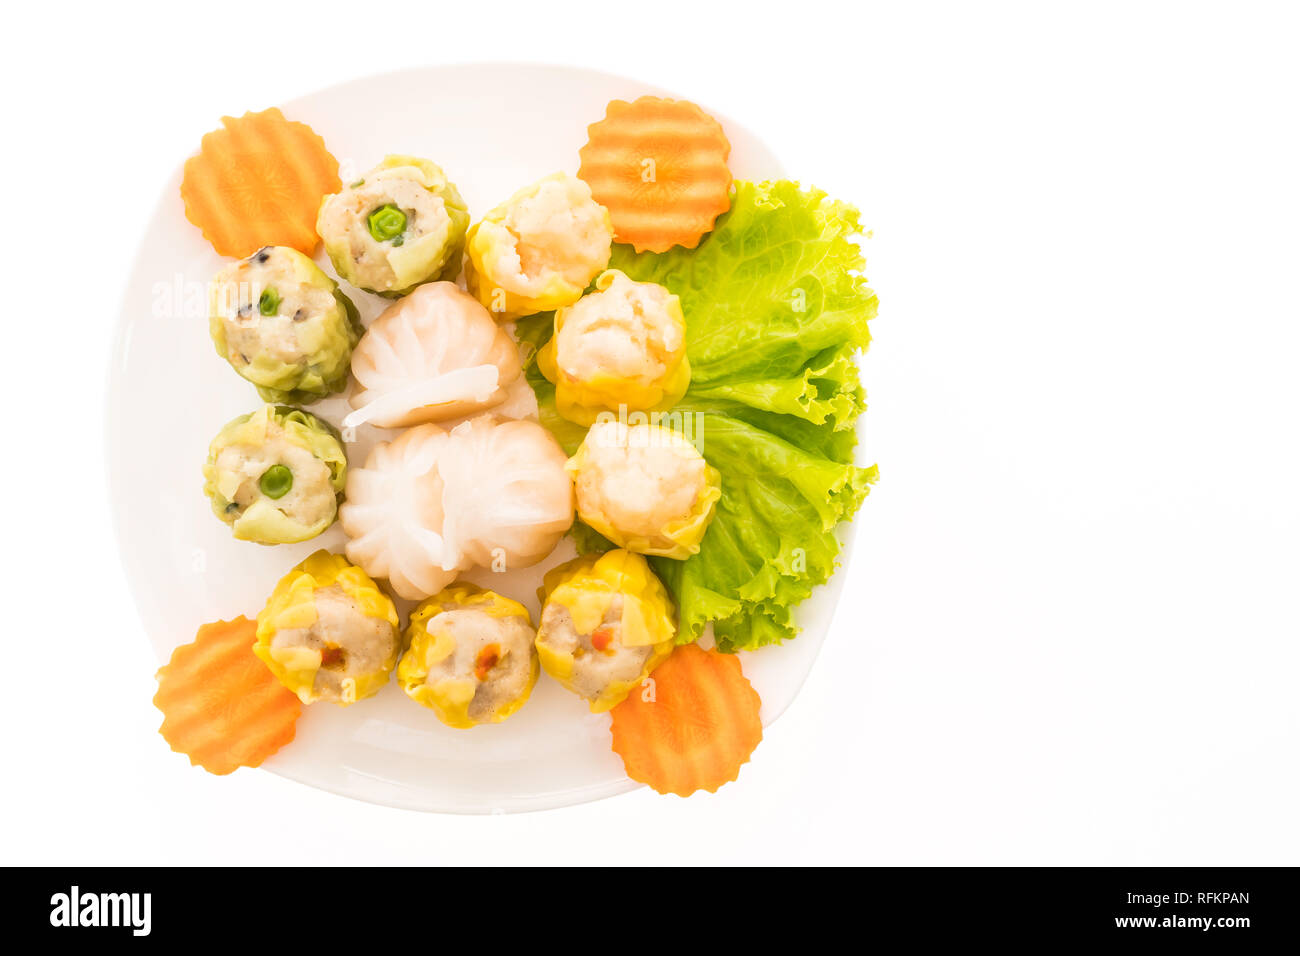 Dim sum e gnocco - cucina cinese in stile piastra bianca isolata su sfondo bianco Foto Stock